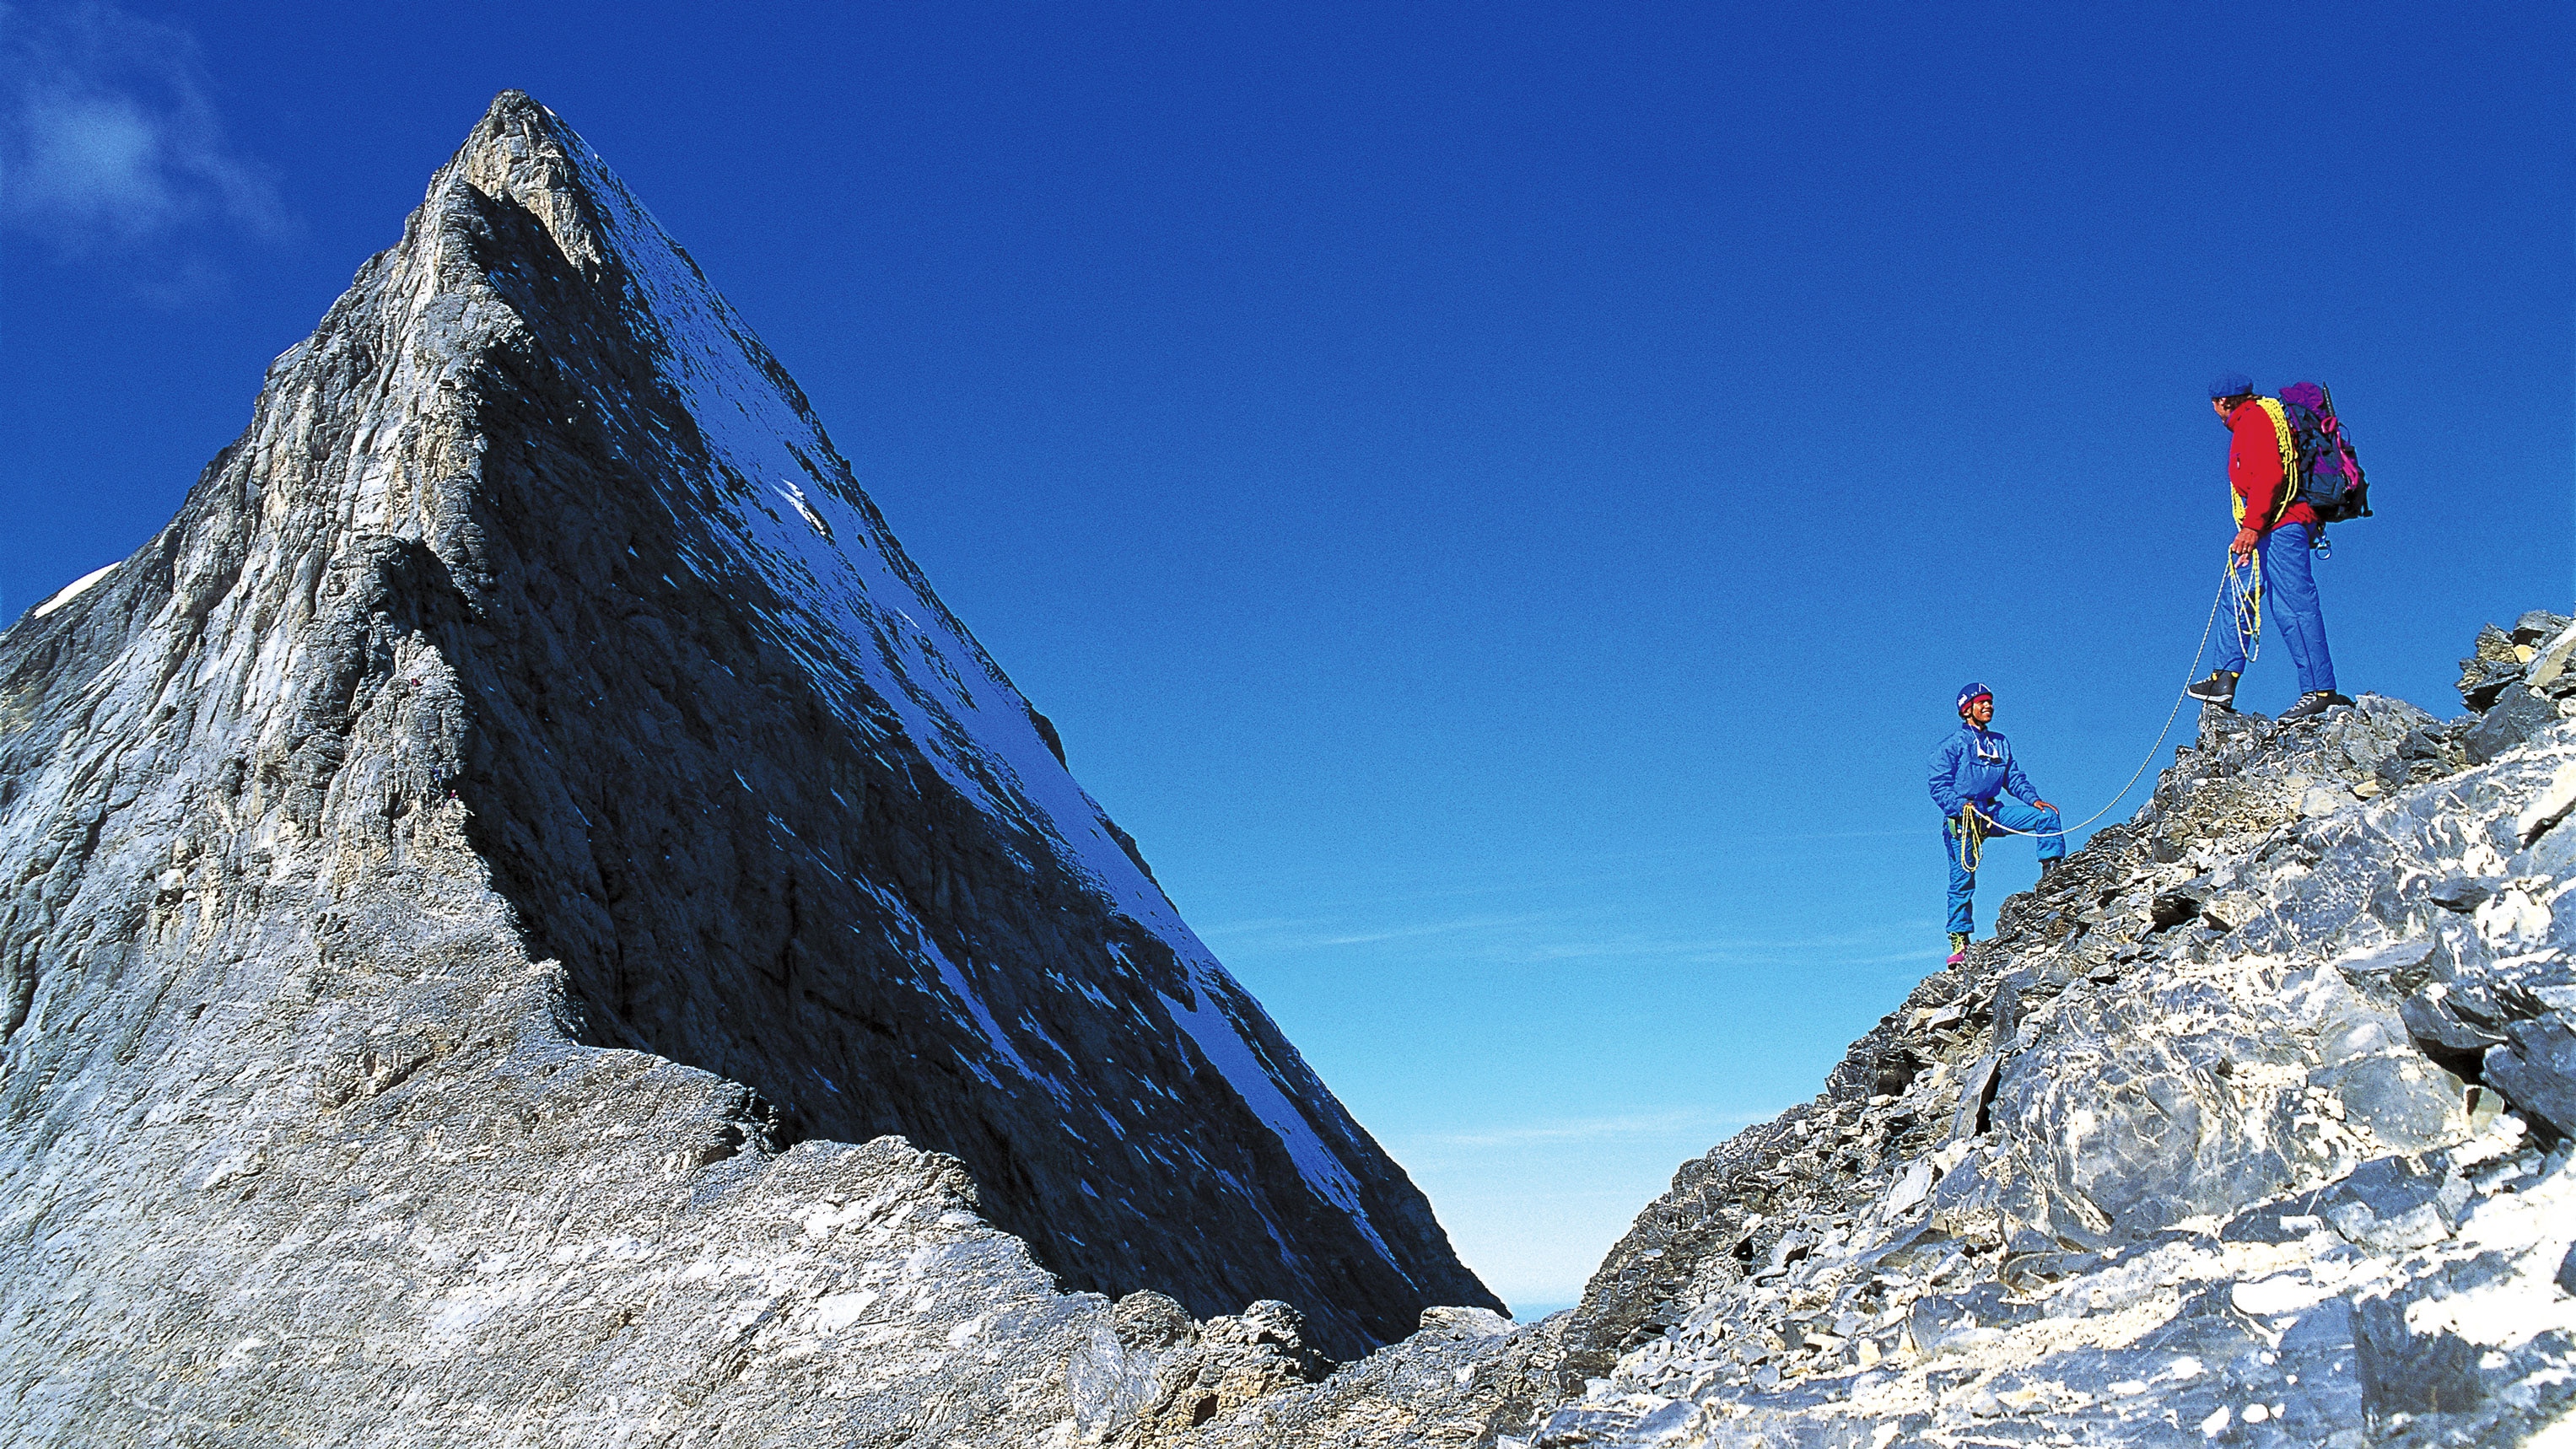 Bergsteiger am Mittellegigrat des Eigers in den Berner Alpen